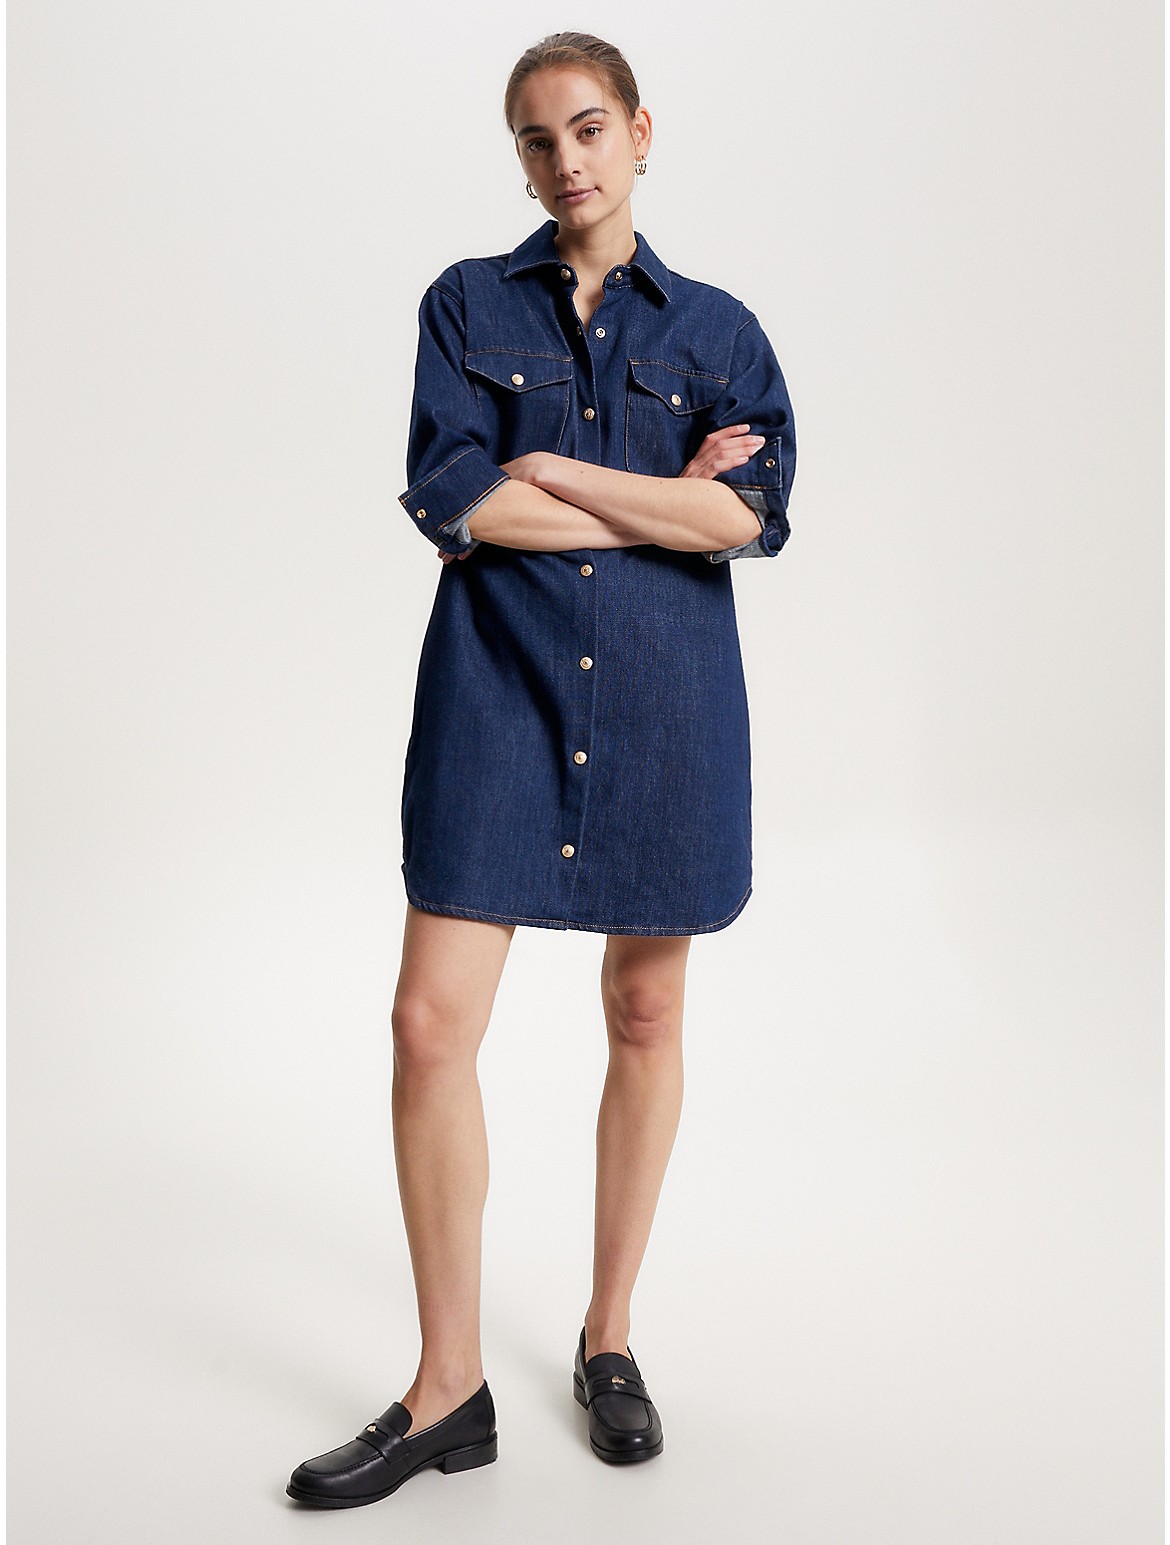 Tommy Hilfiger Women's Long-Sleeve Denim Shirtdress